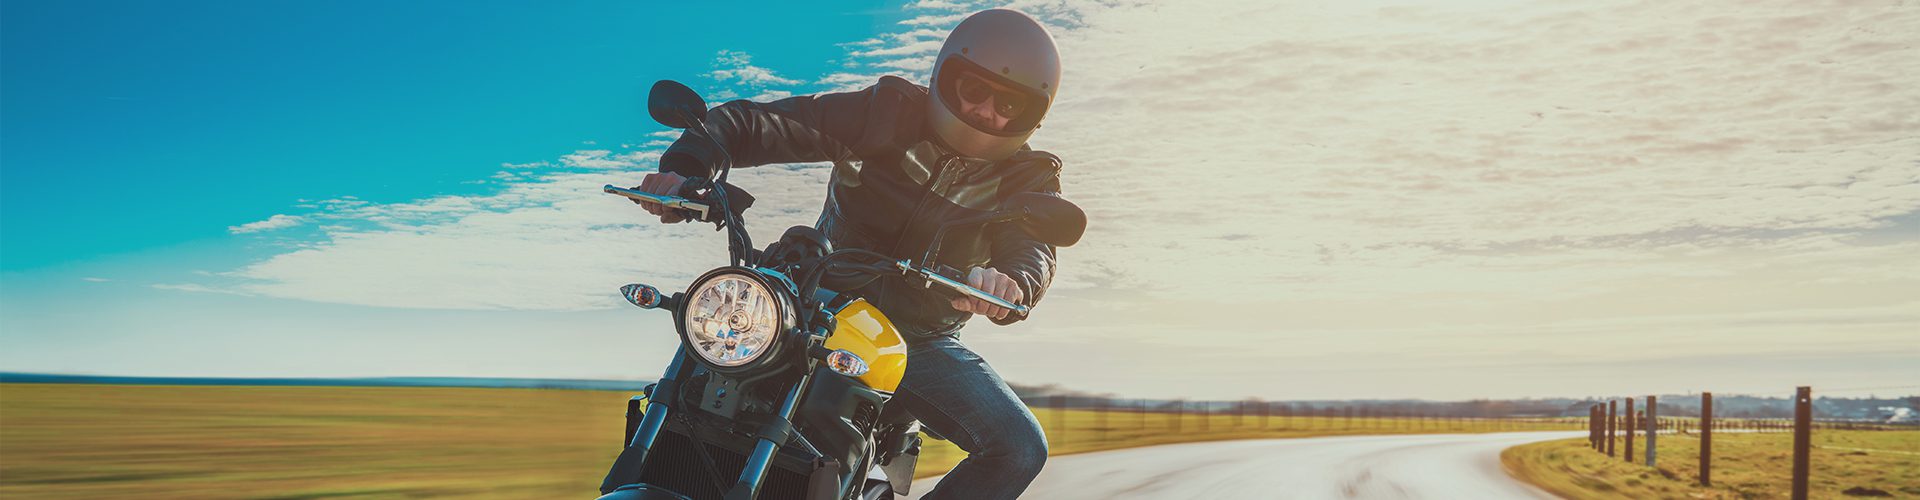 Motorcykelforsikring - mand på landevejen